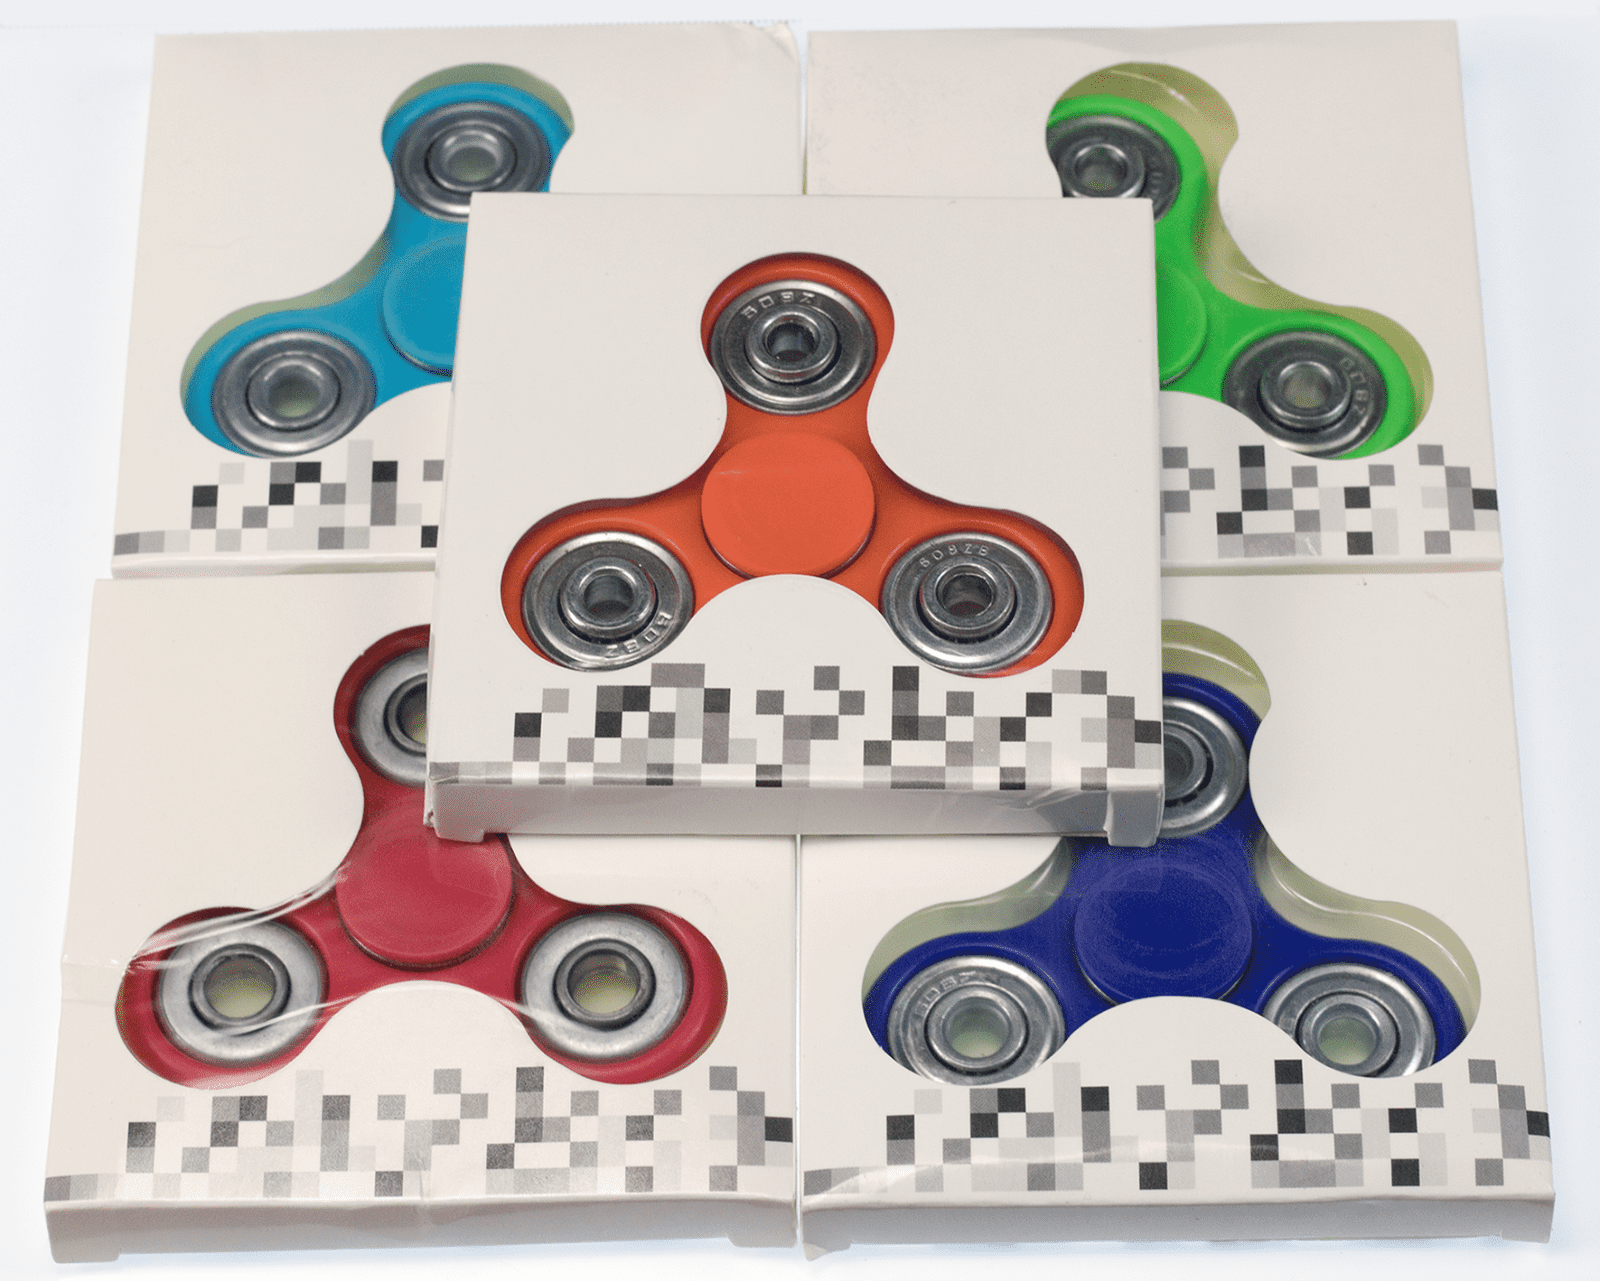 NEW EDC Hand Spinner Tri-Spinner Bearing Fidget Finger Gyro Kid Adult Focus Toys 